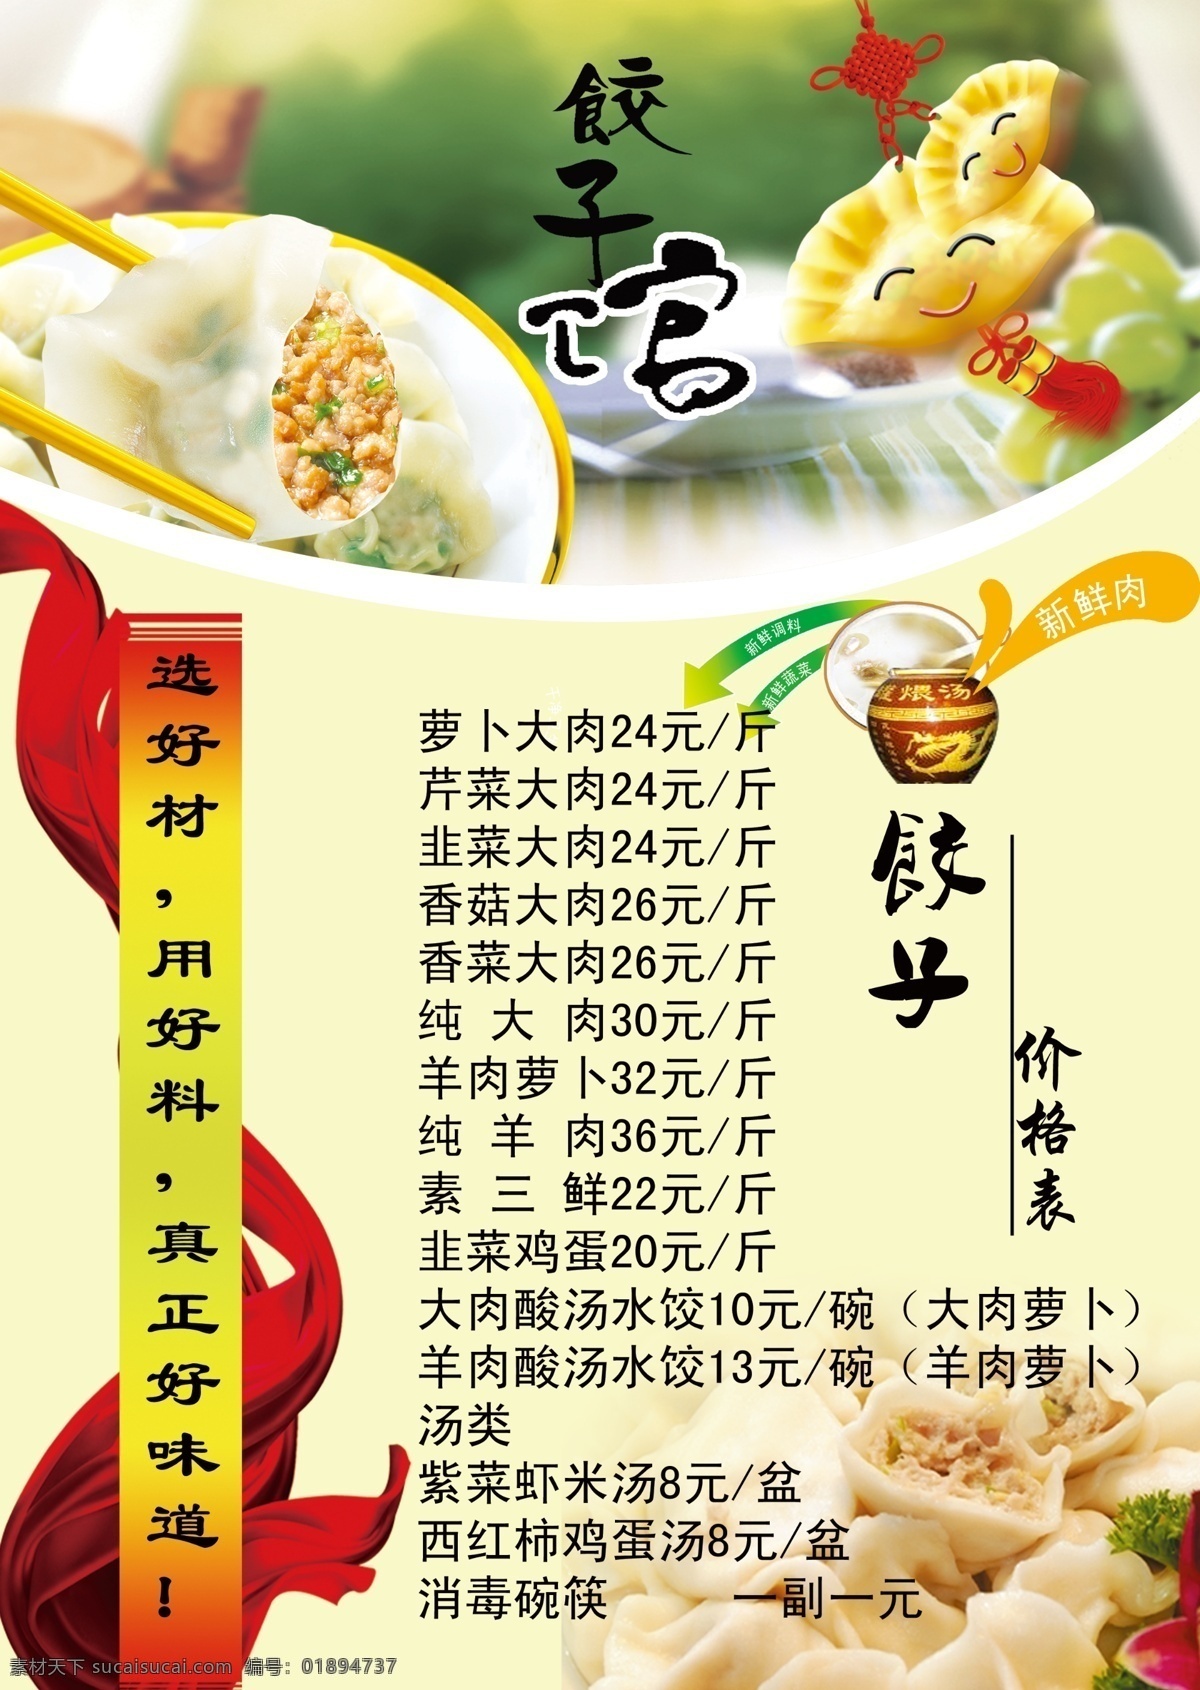 饺子 水饺 菜单 饺子菜单 菜单设计图 文化艺术 传统文化